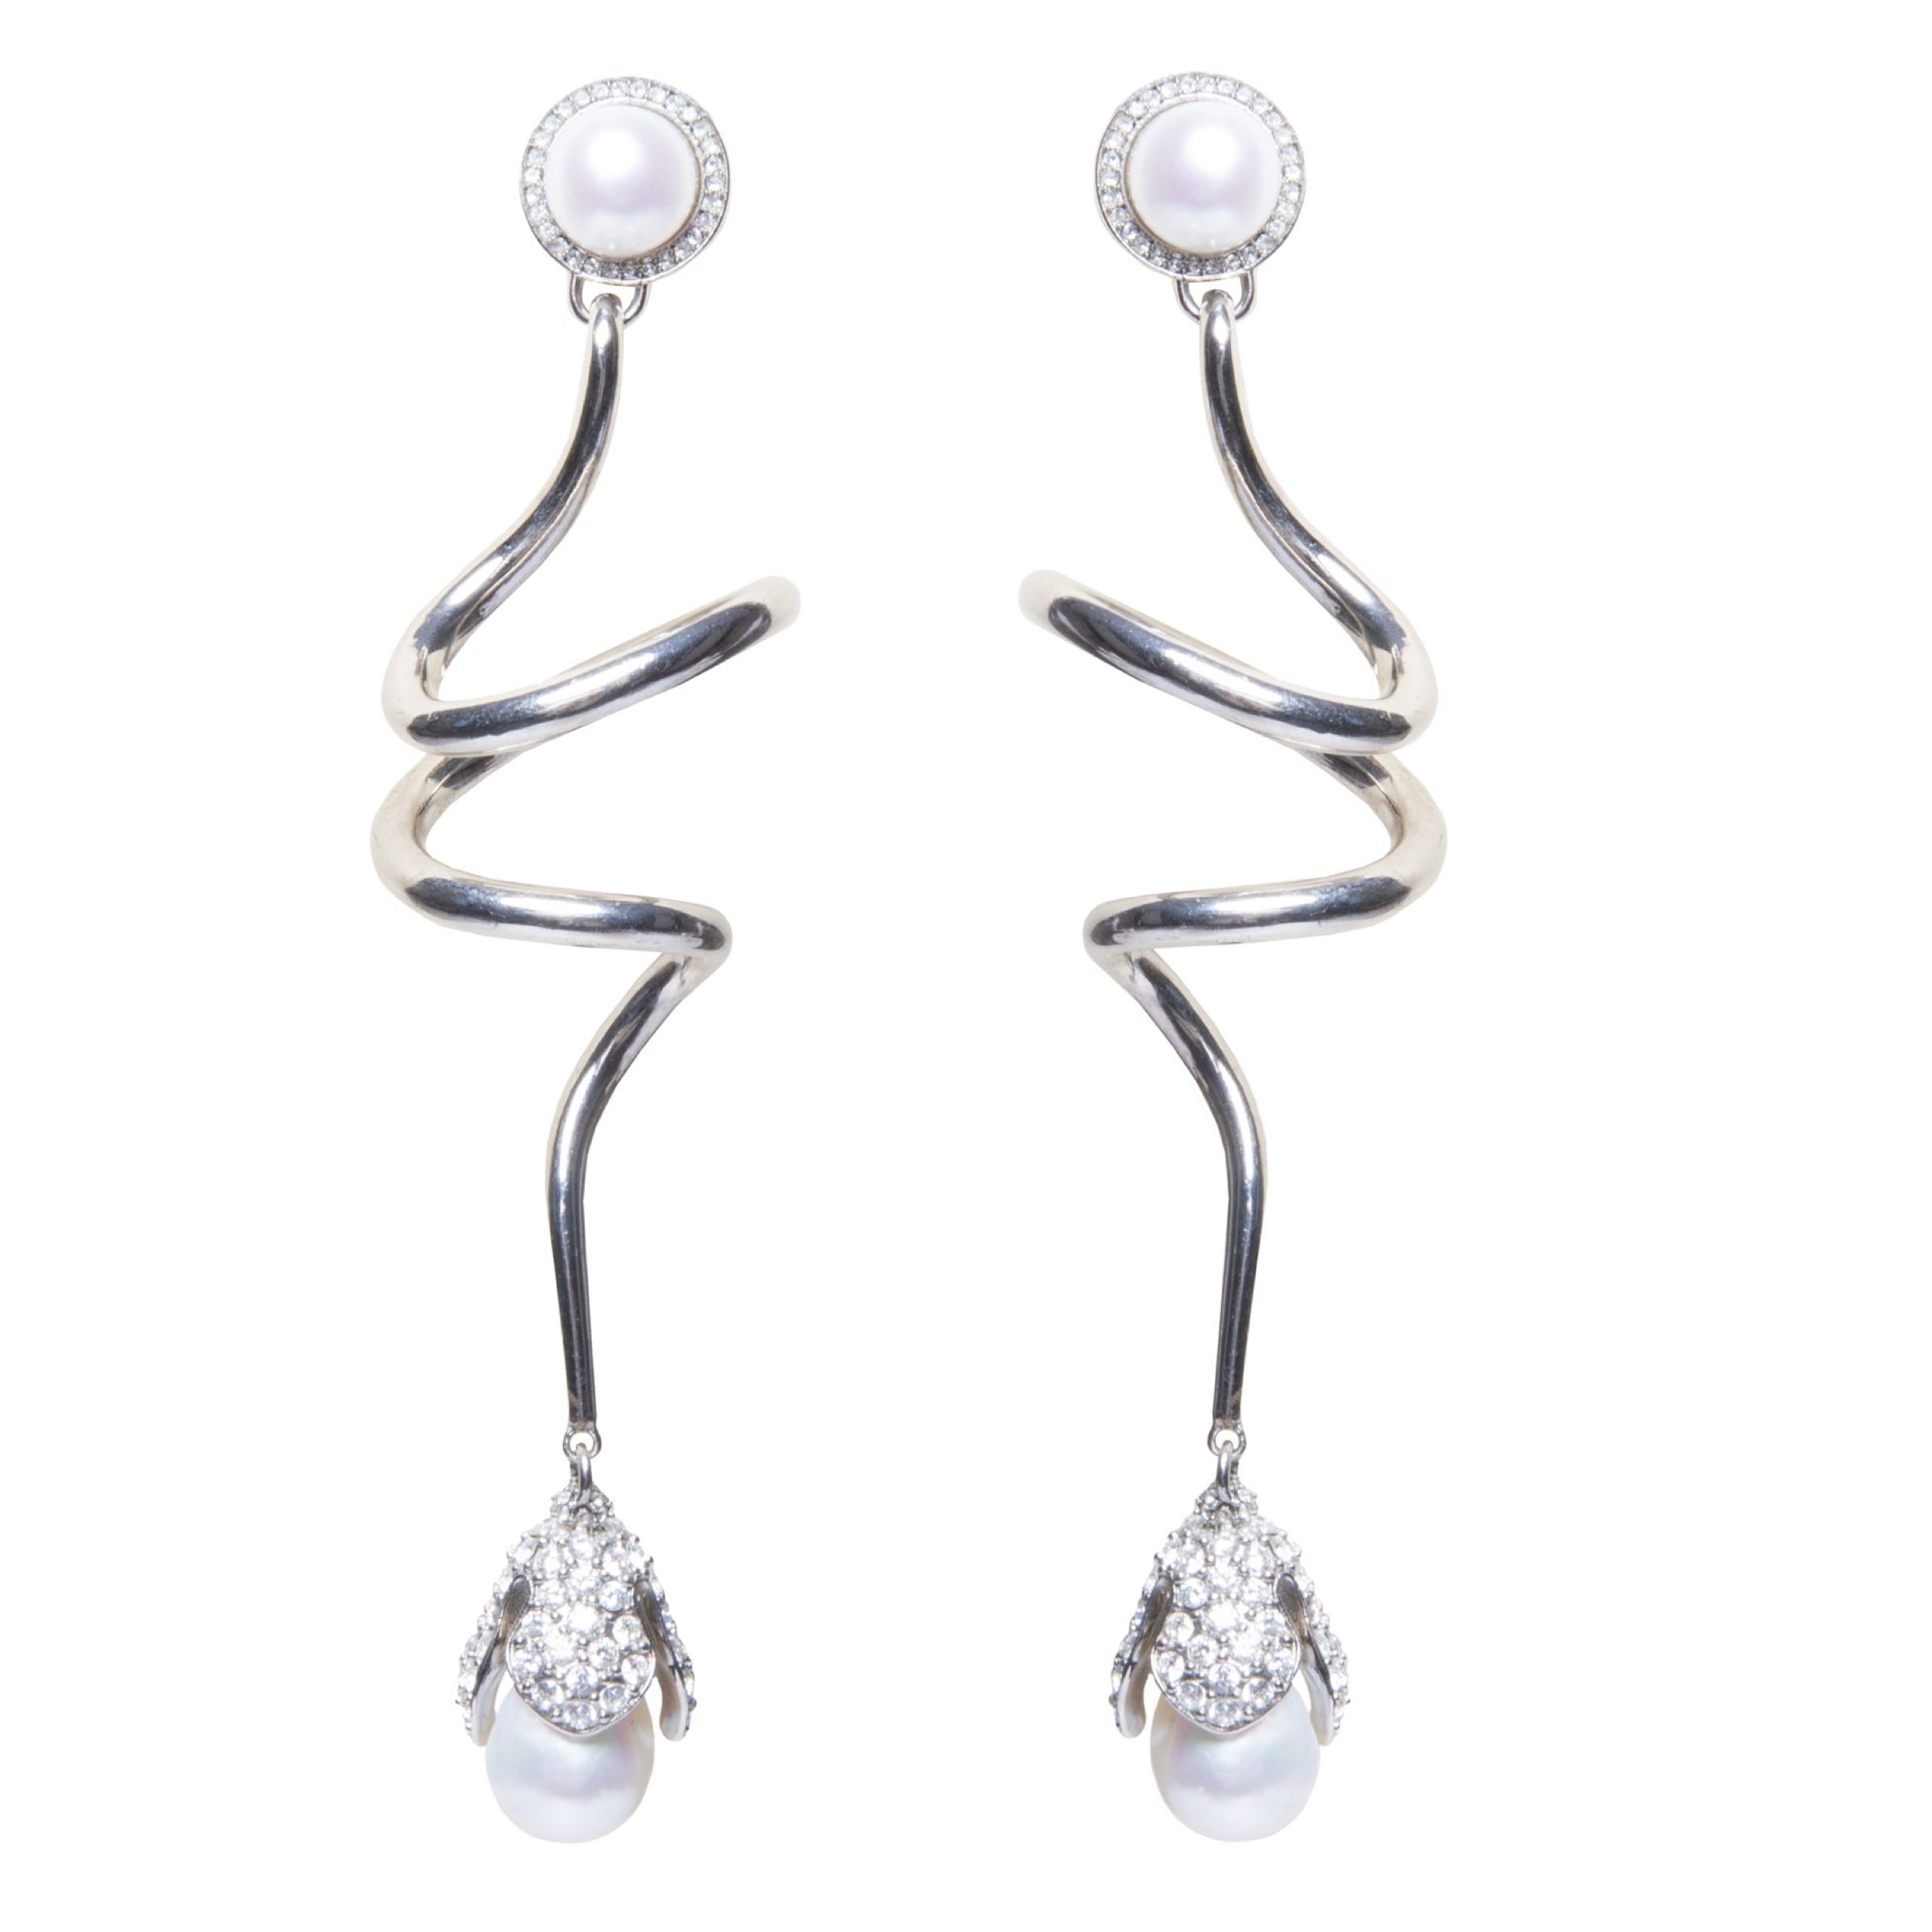 Eugenia silver swirl pearl earrings